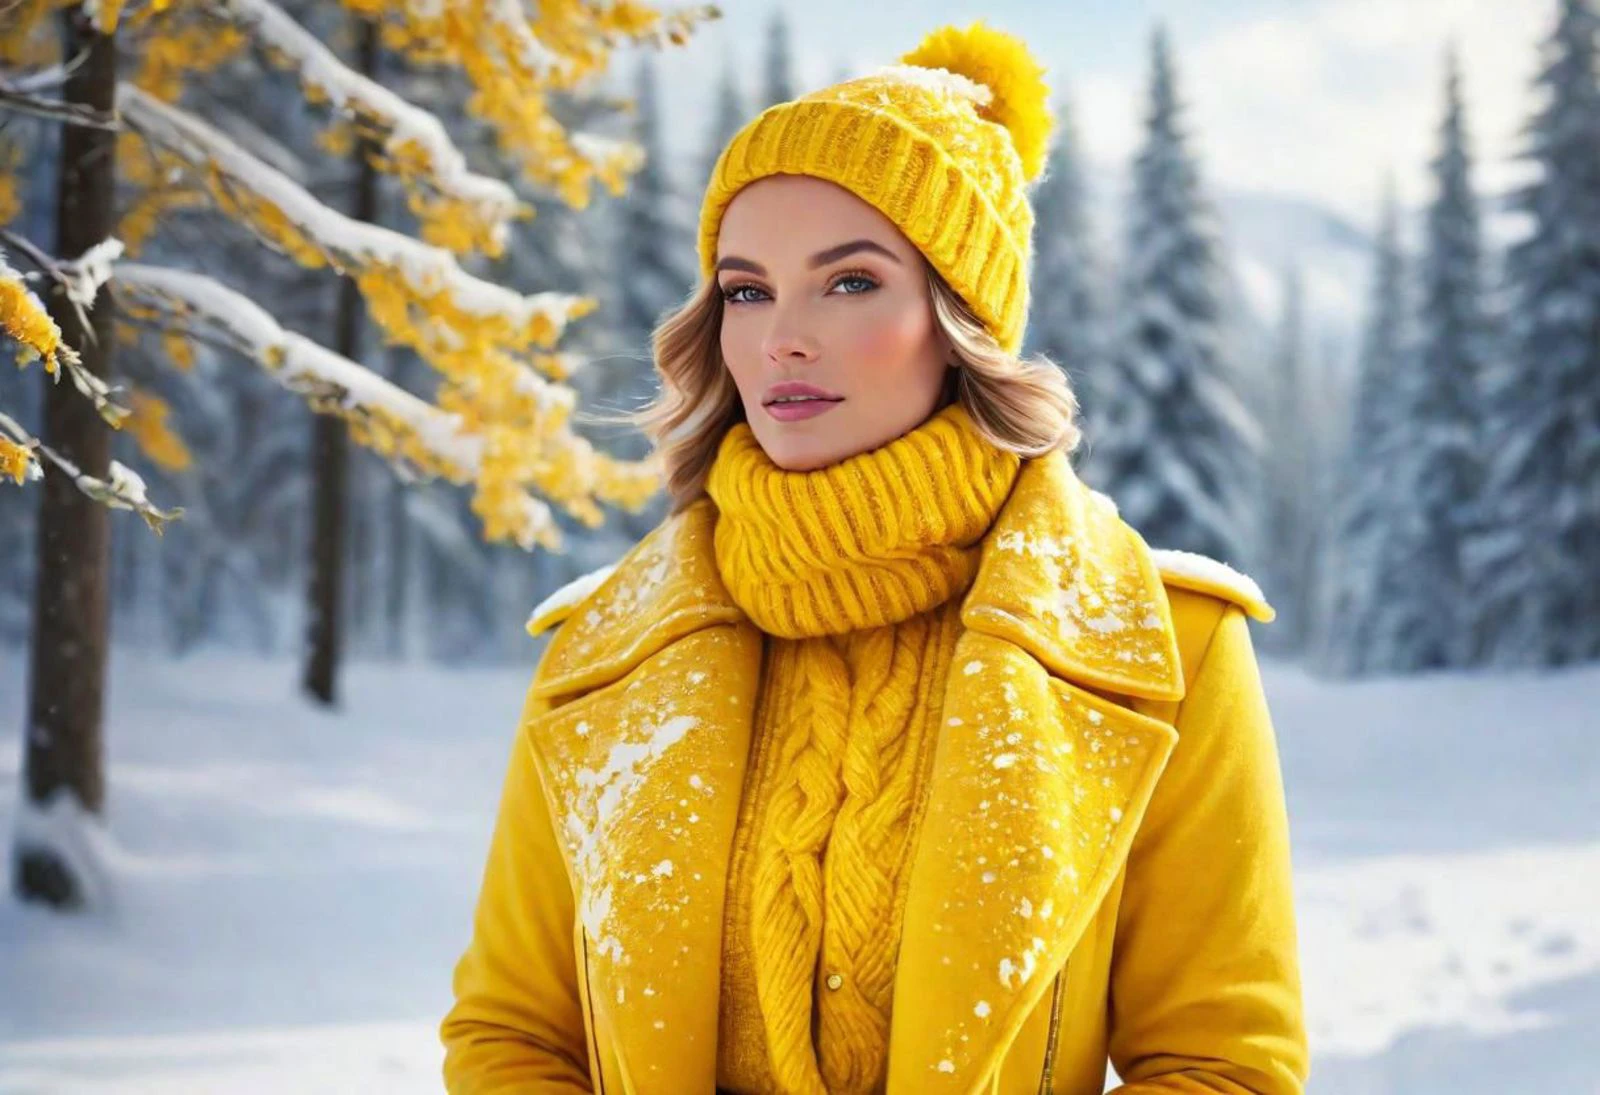 "制作一幅以鲜艳黄色衣服的迷人女性为特色的图像, 体现黄队冬季的精髓. 想象她穿着优雅冬装的场景, 周围环绕着雪景和冰雪. 点亮季节之美，在冬季背景下展现黄队的活力精神."